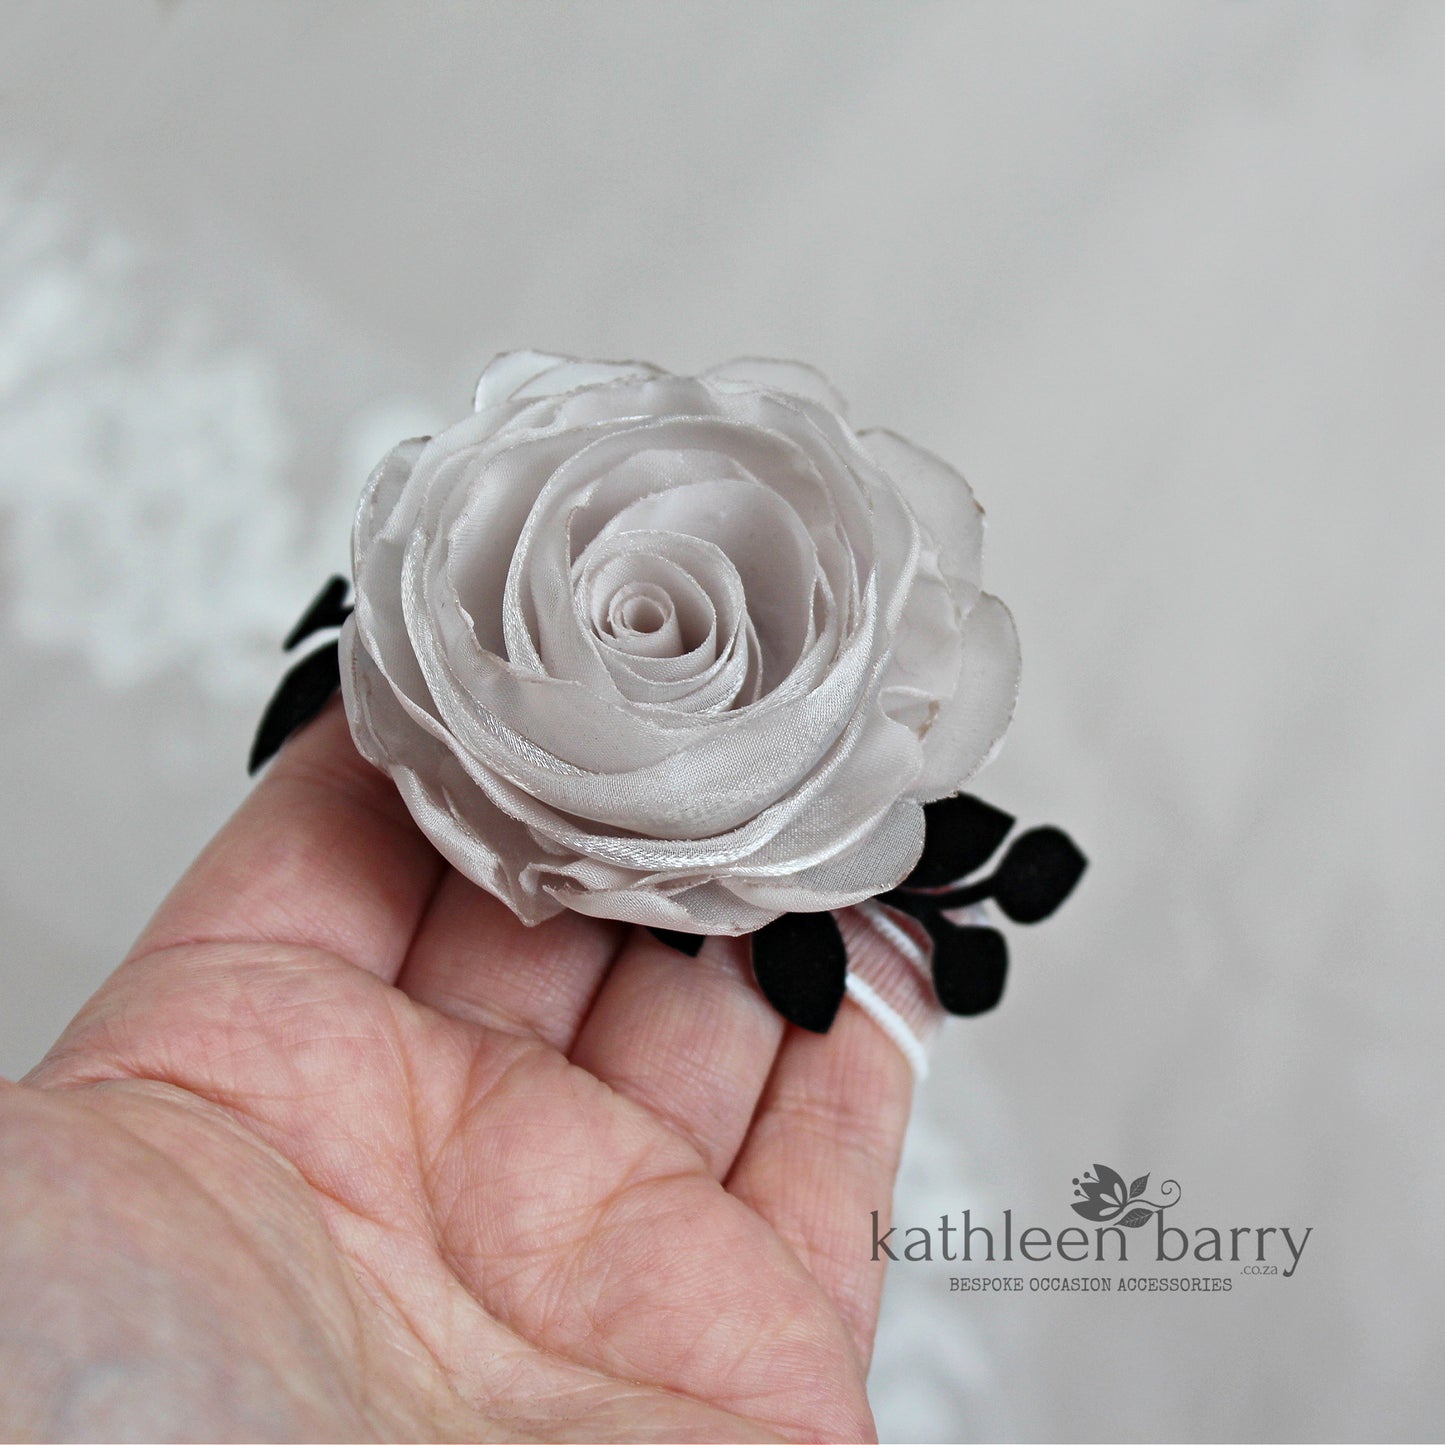 Modern rose wrist corsage - organza rose with velvet leaf detail